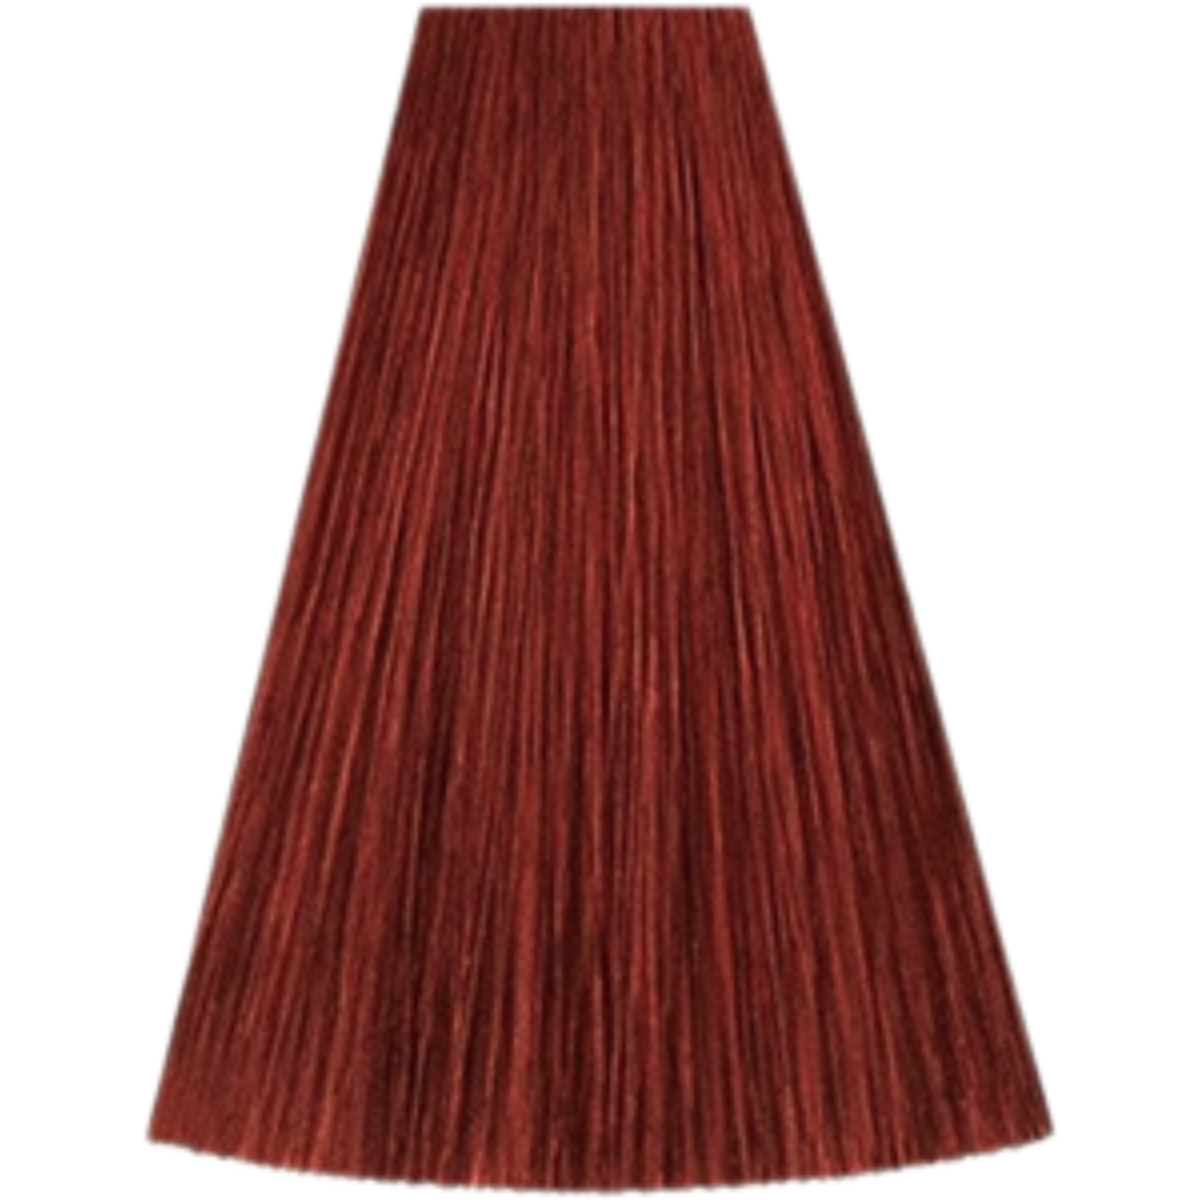 צבע שיער גוון 7/45 MEDIUM BLONDE RED MAHOGANY קאדוס KADUS צבע לשיער 60 גרם